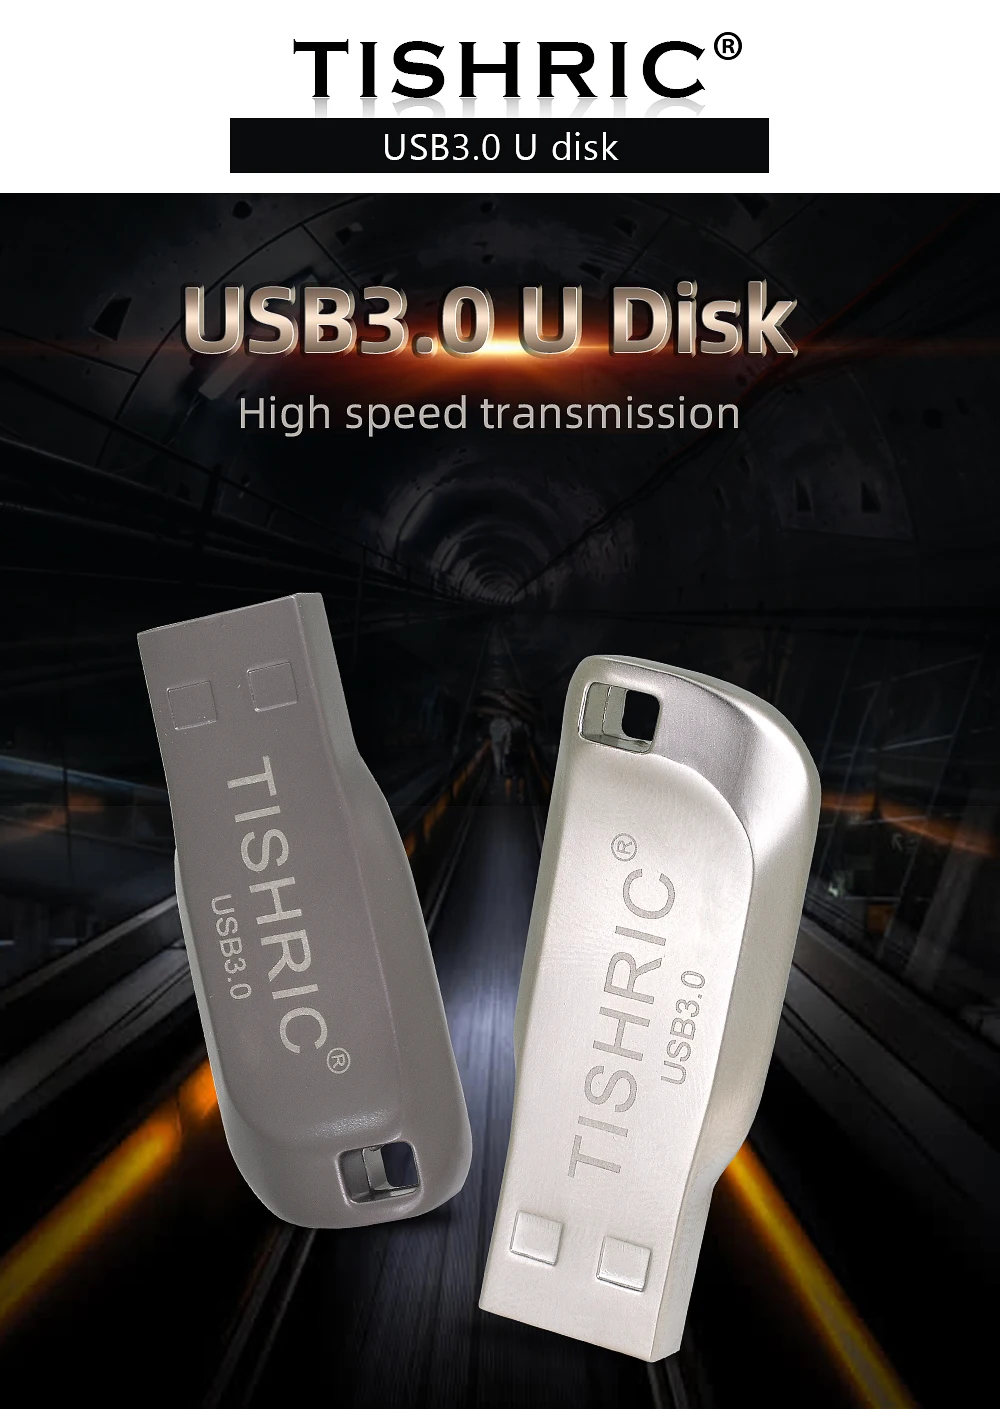 Флеш-накопитель TISHRIC Mini Usb Memory Stick флэш-память Usb 3,0 флеш-накопитель 128 Гб 64 Гб 32 Гб флешки, Usb флеш-карта для портативных ПК